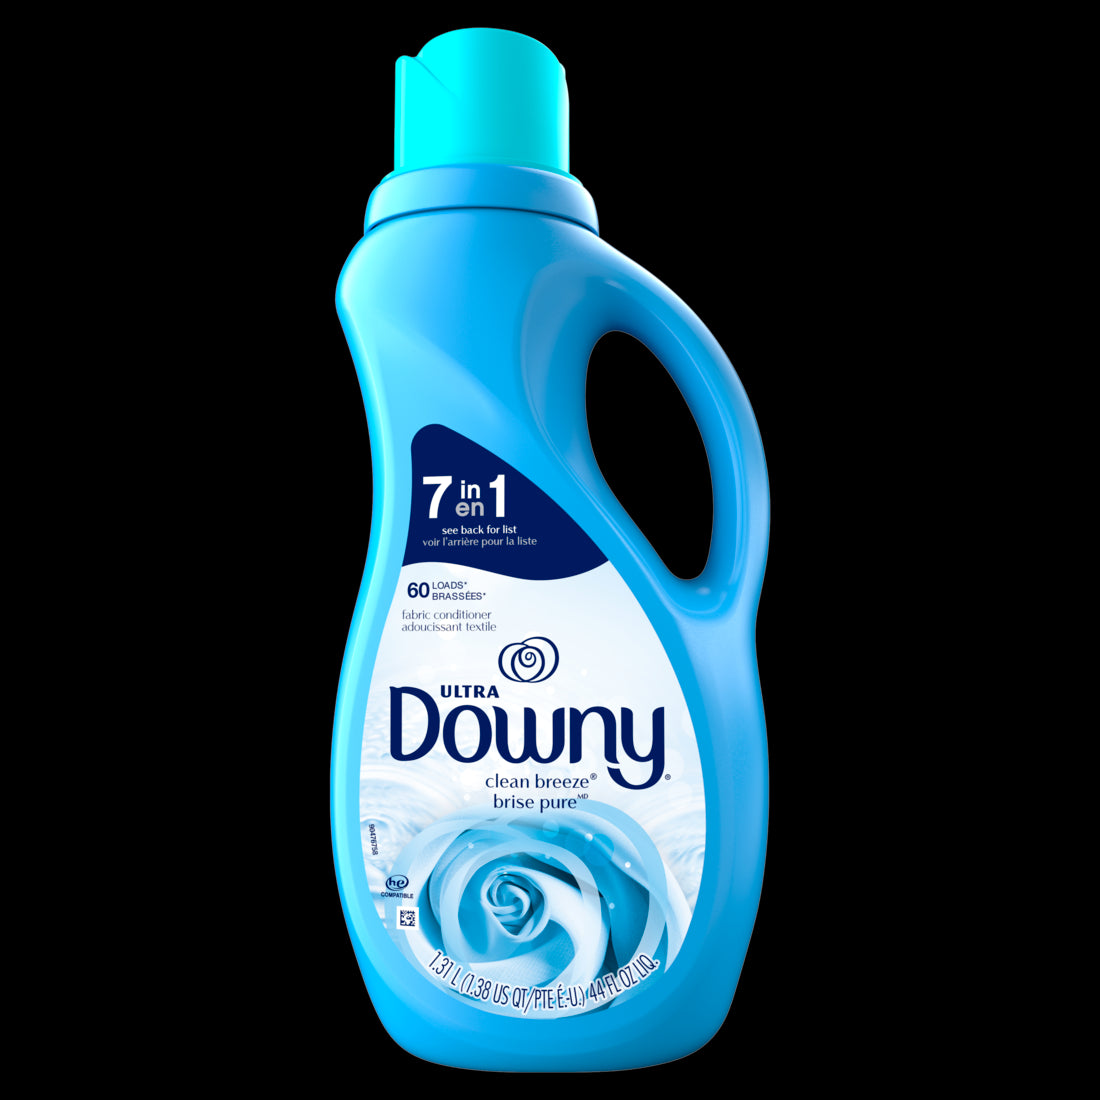 Downy Ultra Laundry Liquid Fabric Softener Clean Breeze 60 Loads - 44oz/6pk